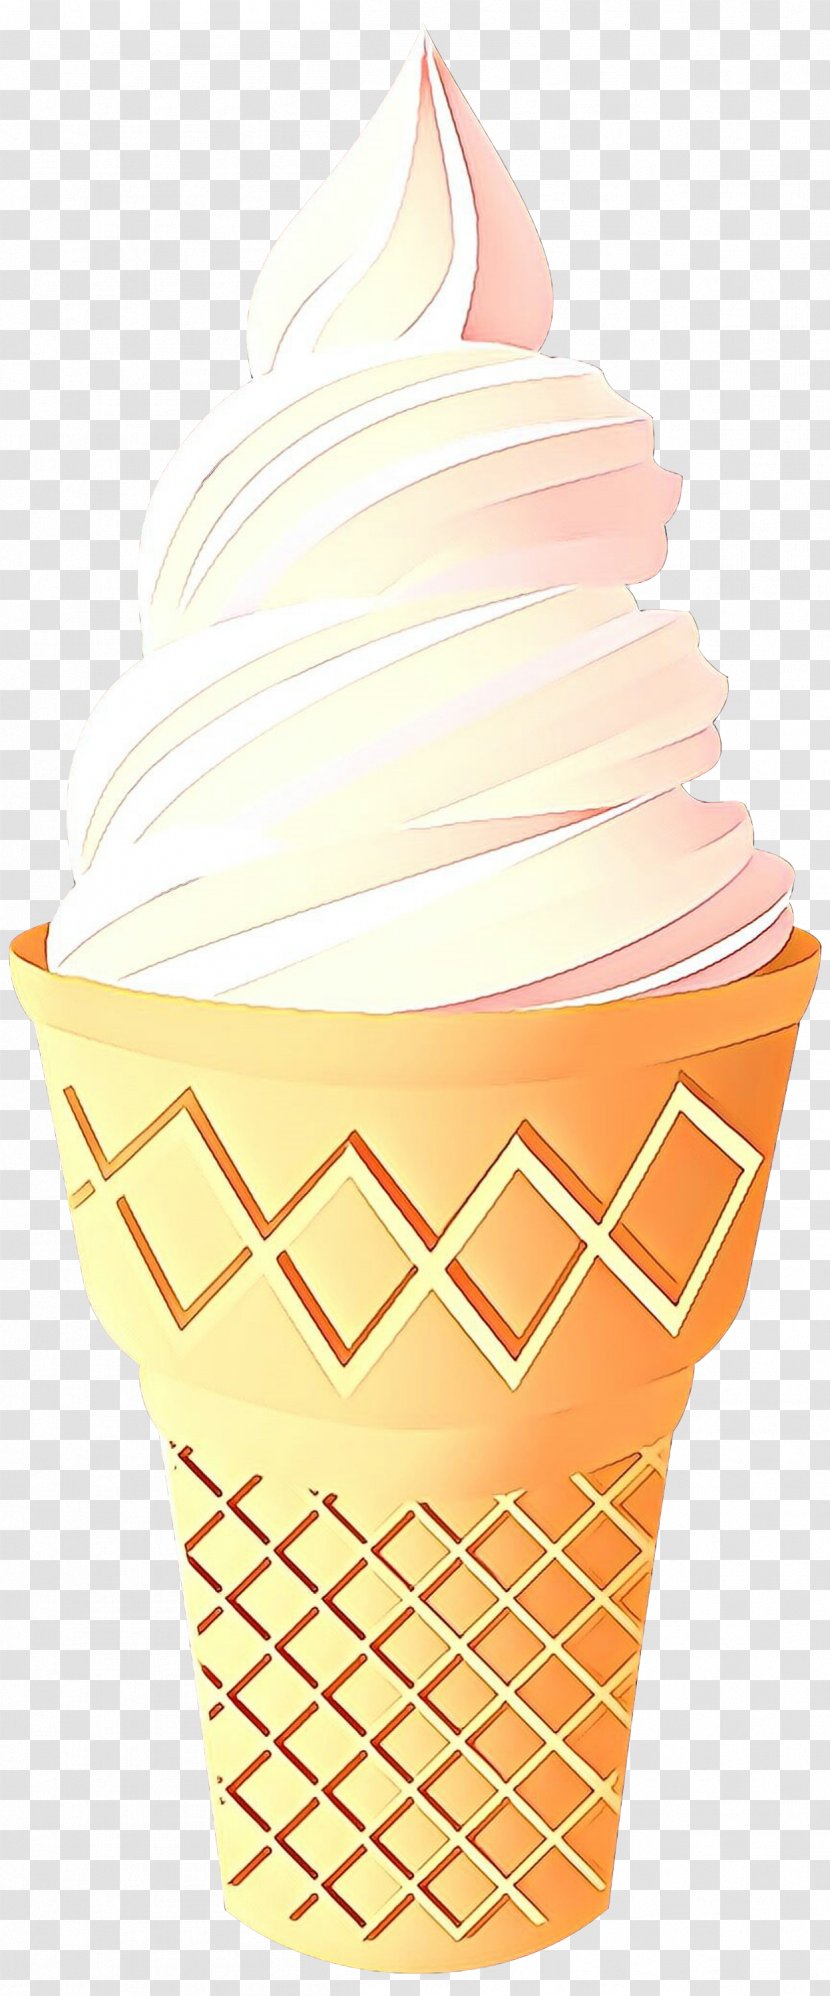 Ice Cream Cones Cupcake Sundae Smoothie - Cone - Dessert Transparent PNG